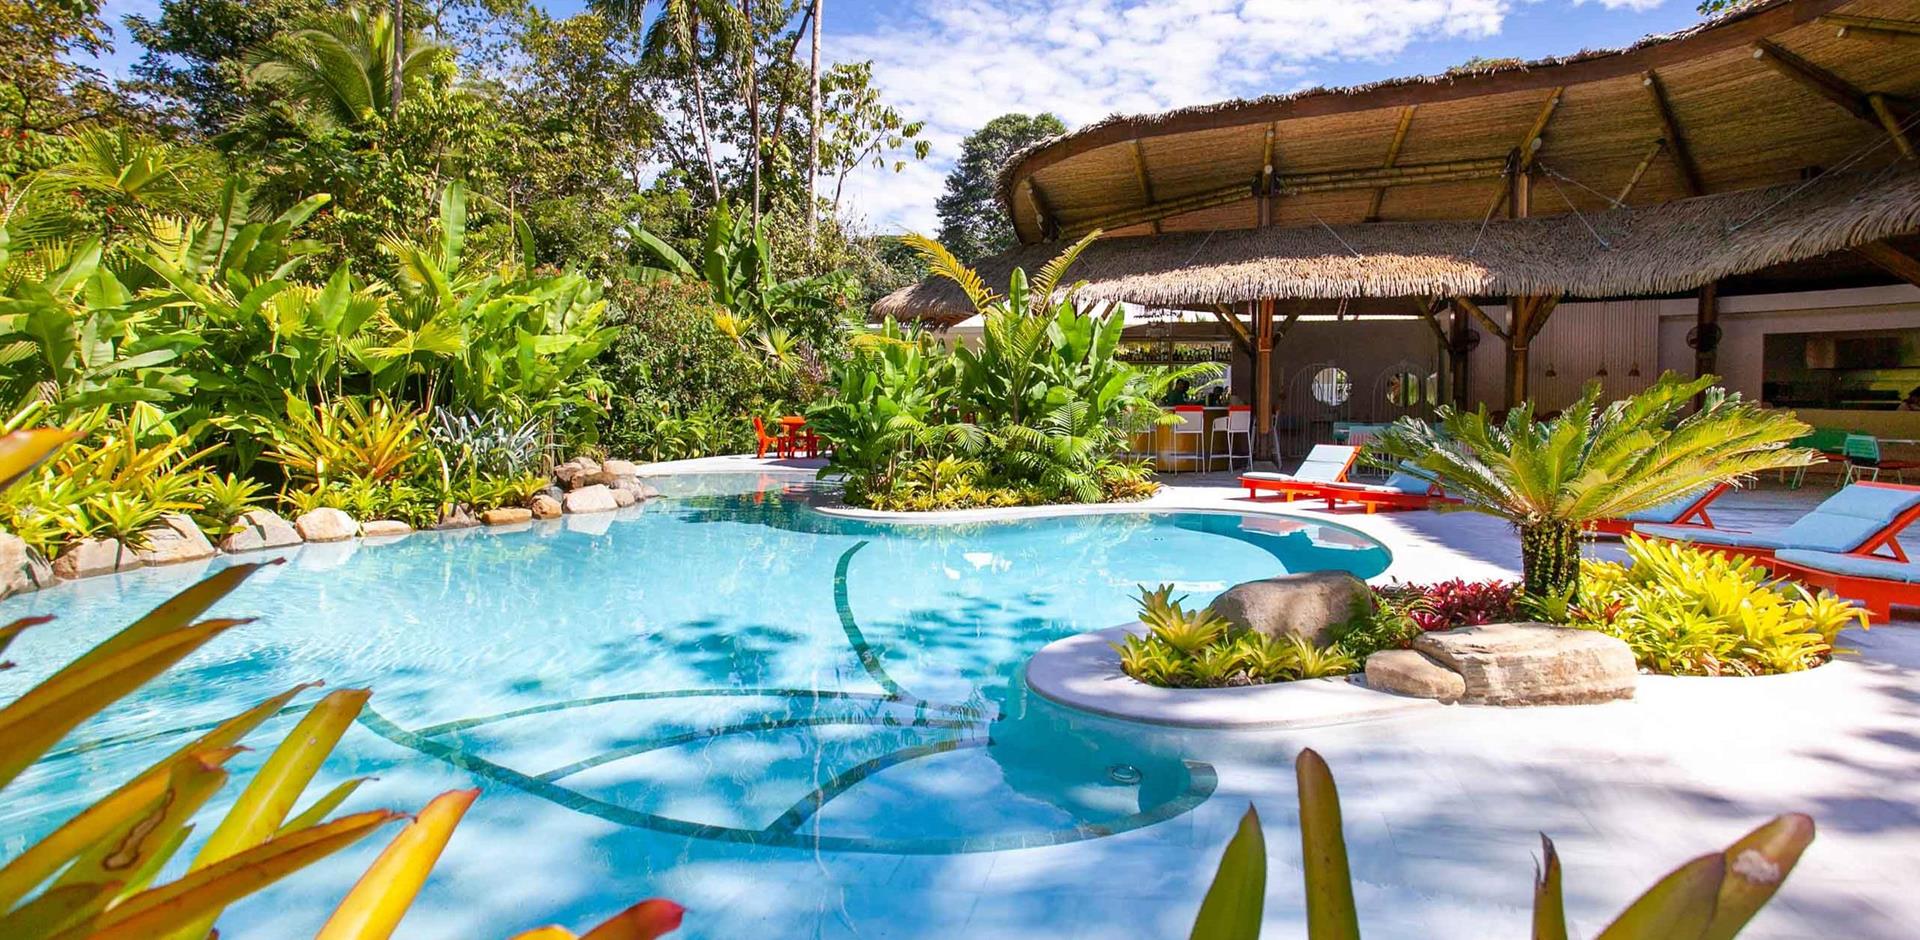 Pool, Aguas Claras, Costa Rica